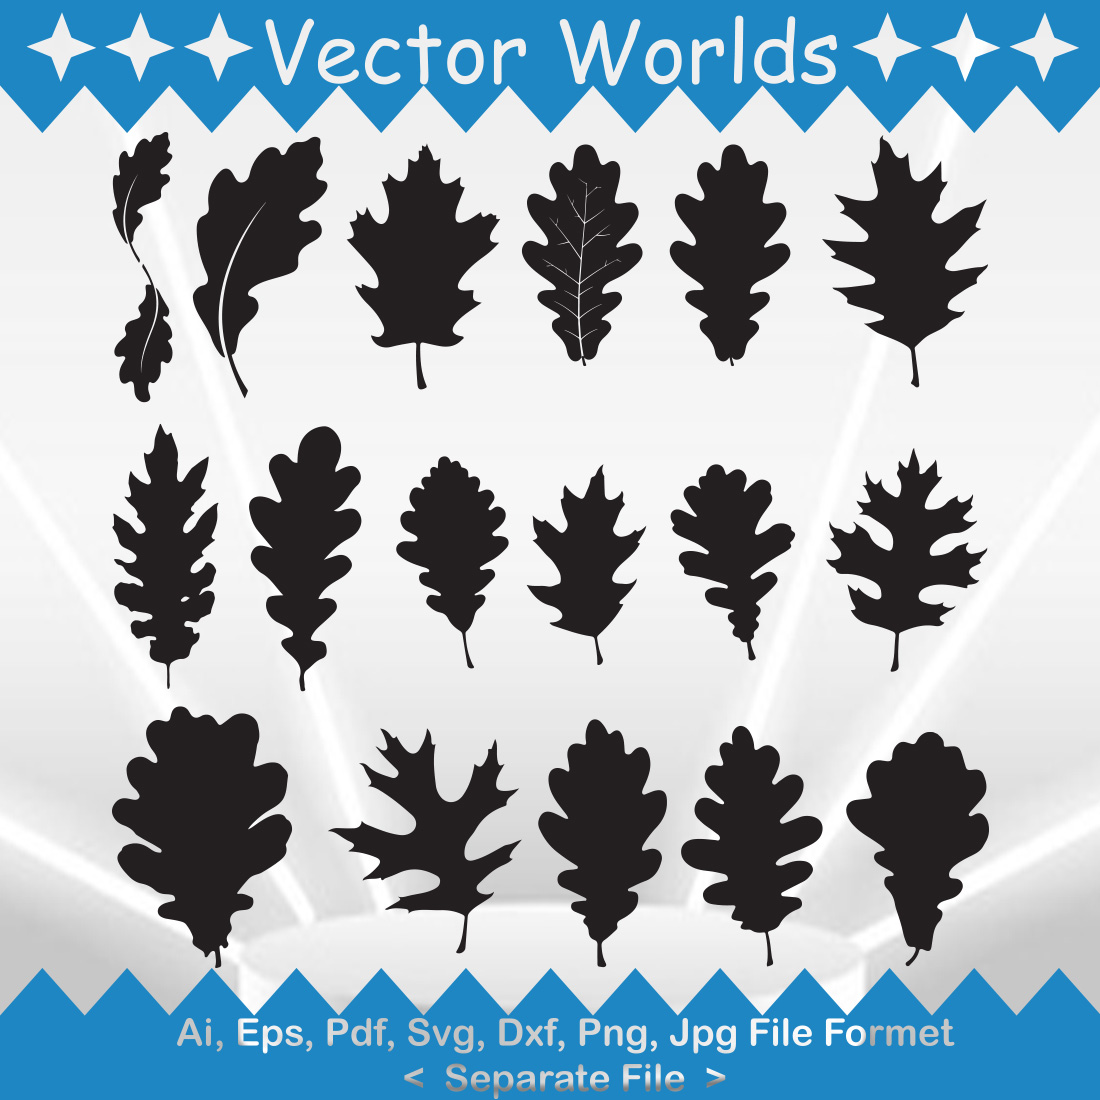 Oak Leaves SVG Vector Design cover image.